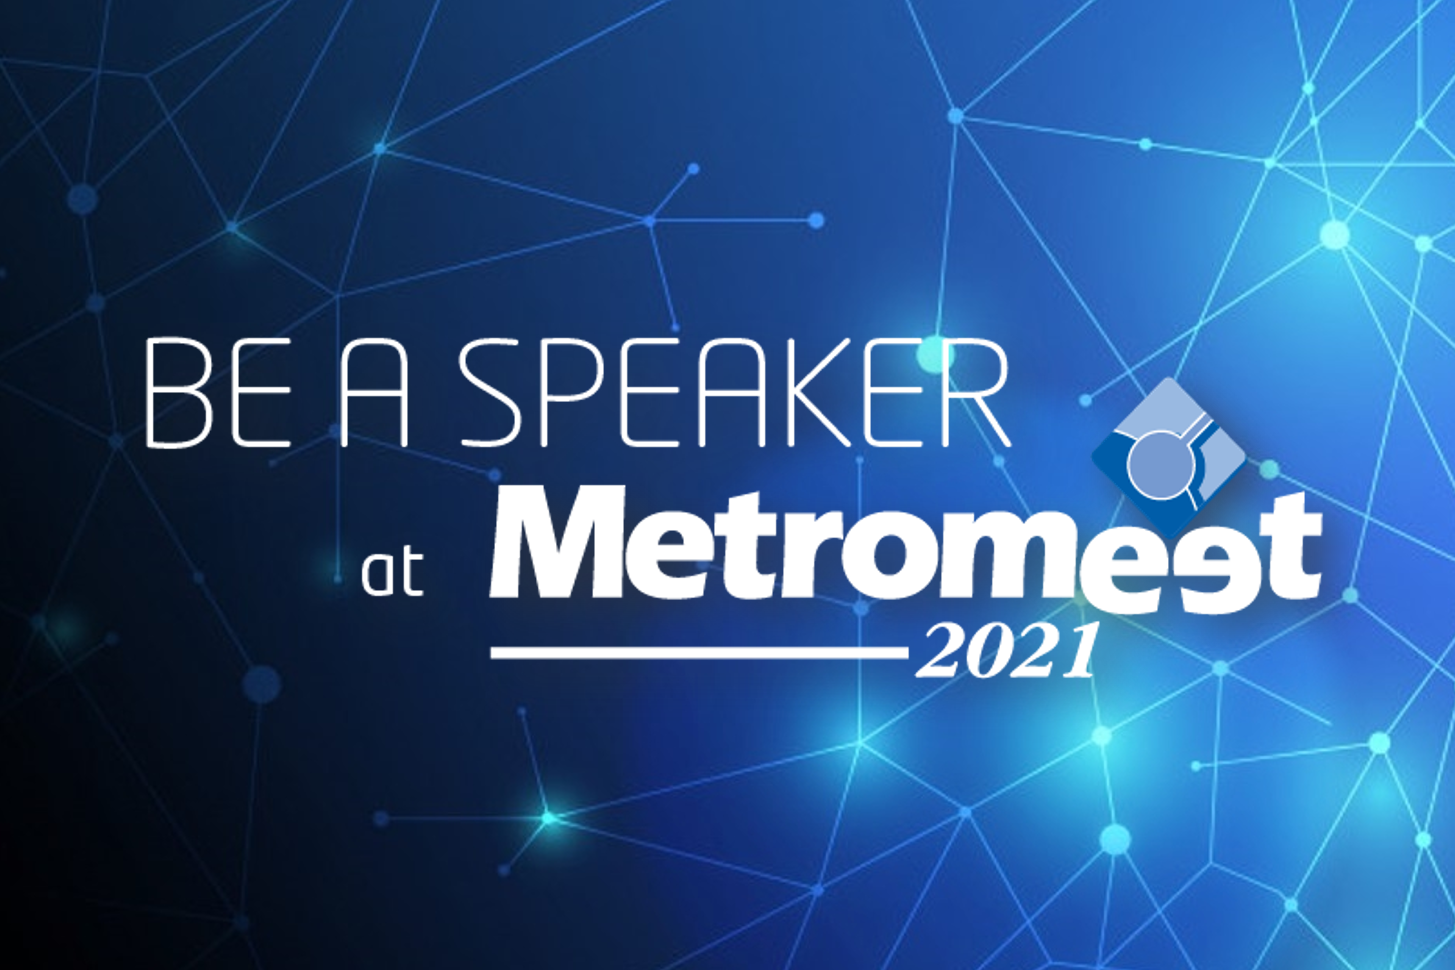 Conferencia en metrología dimensional industrial: Metromeet busca ponentes para su 17ª edición